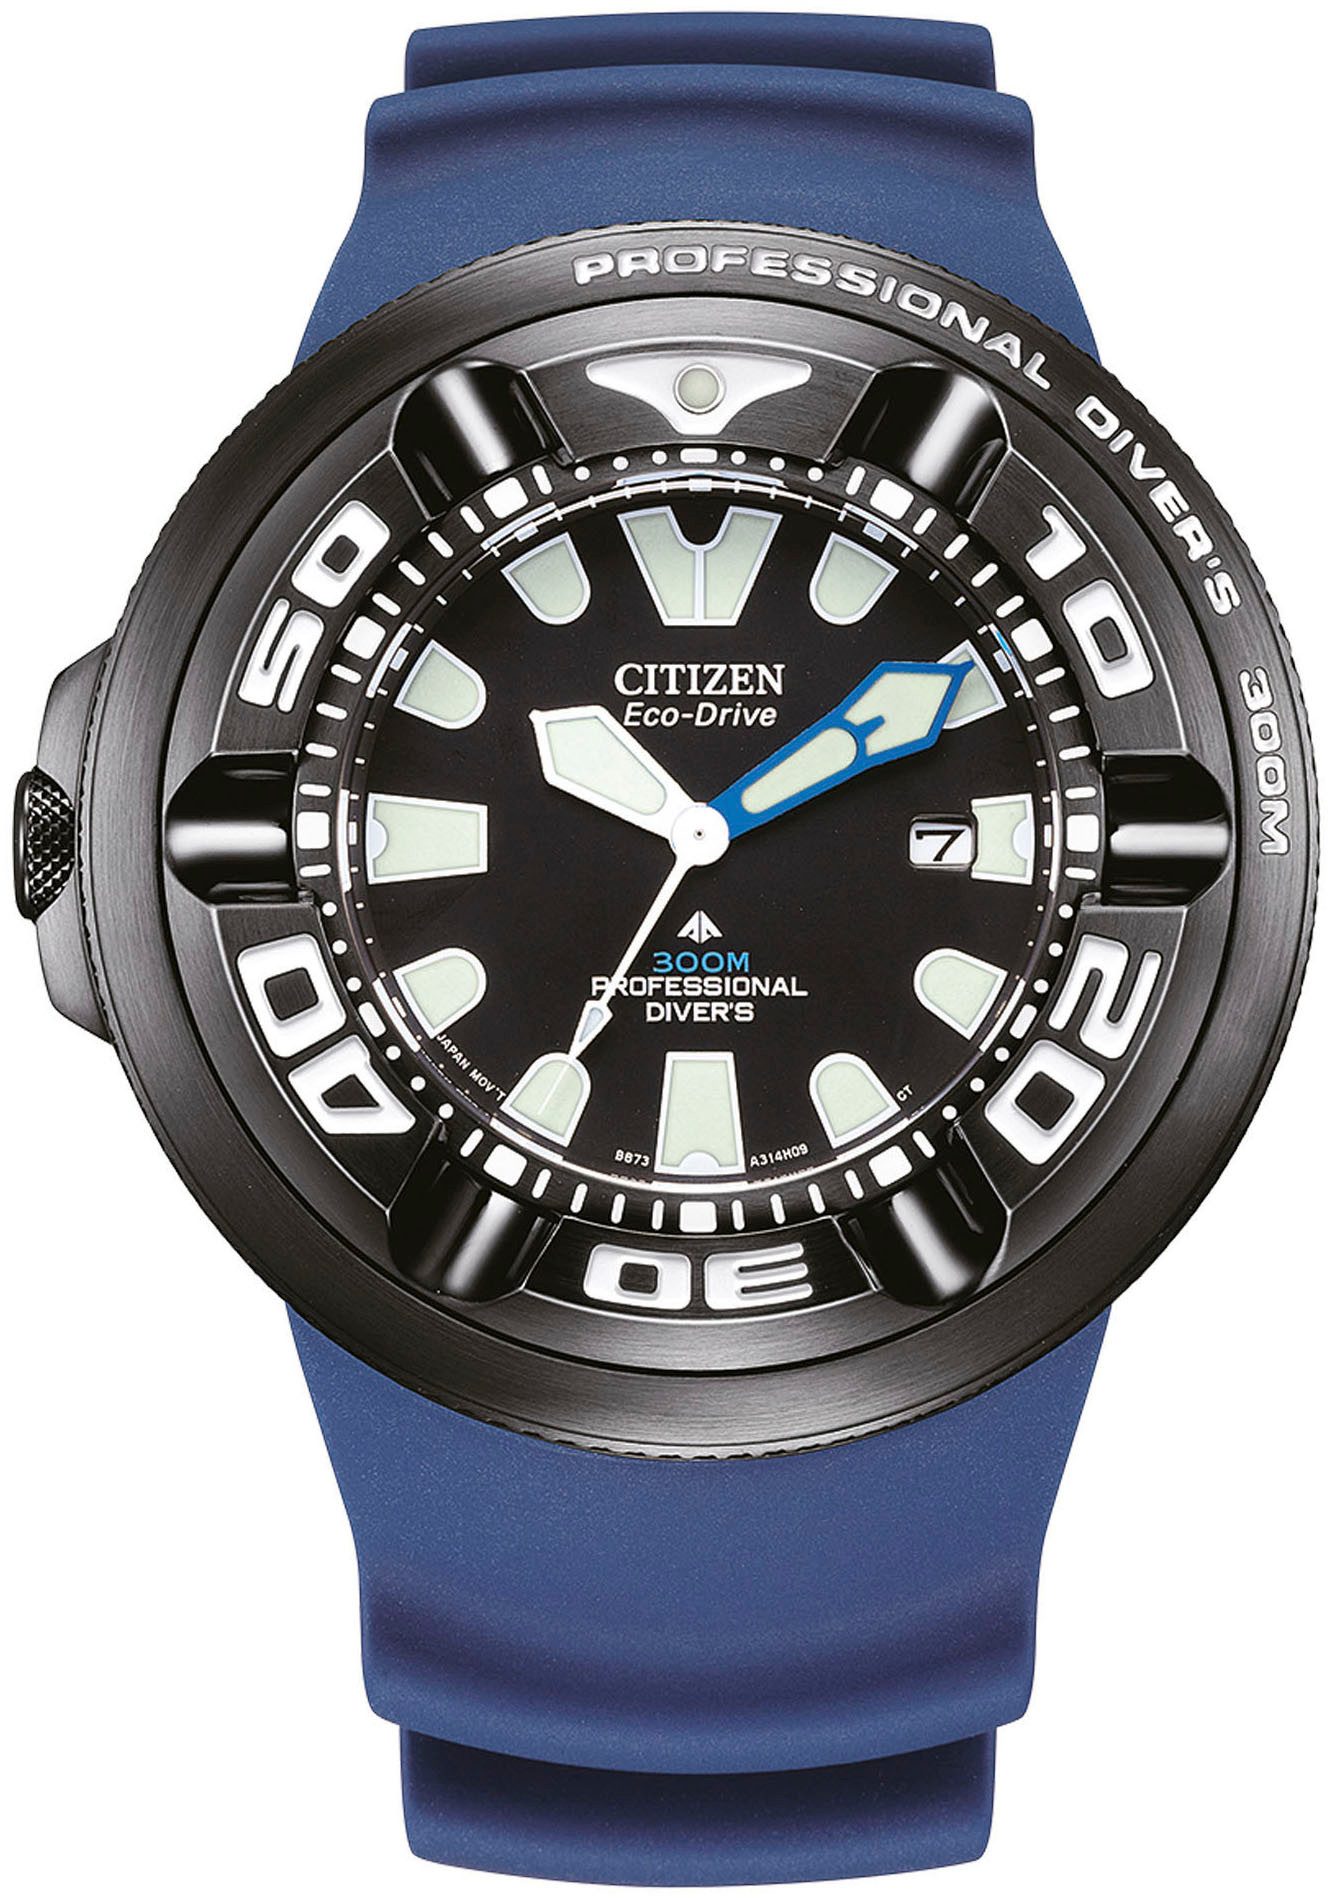 Citizen Taucheruhr Promaster Professional Diver 300, Armbanduhr, Herrenuhr, Solar, Datum